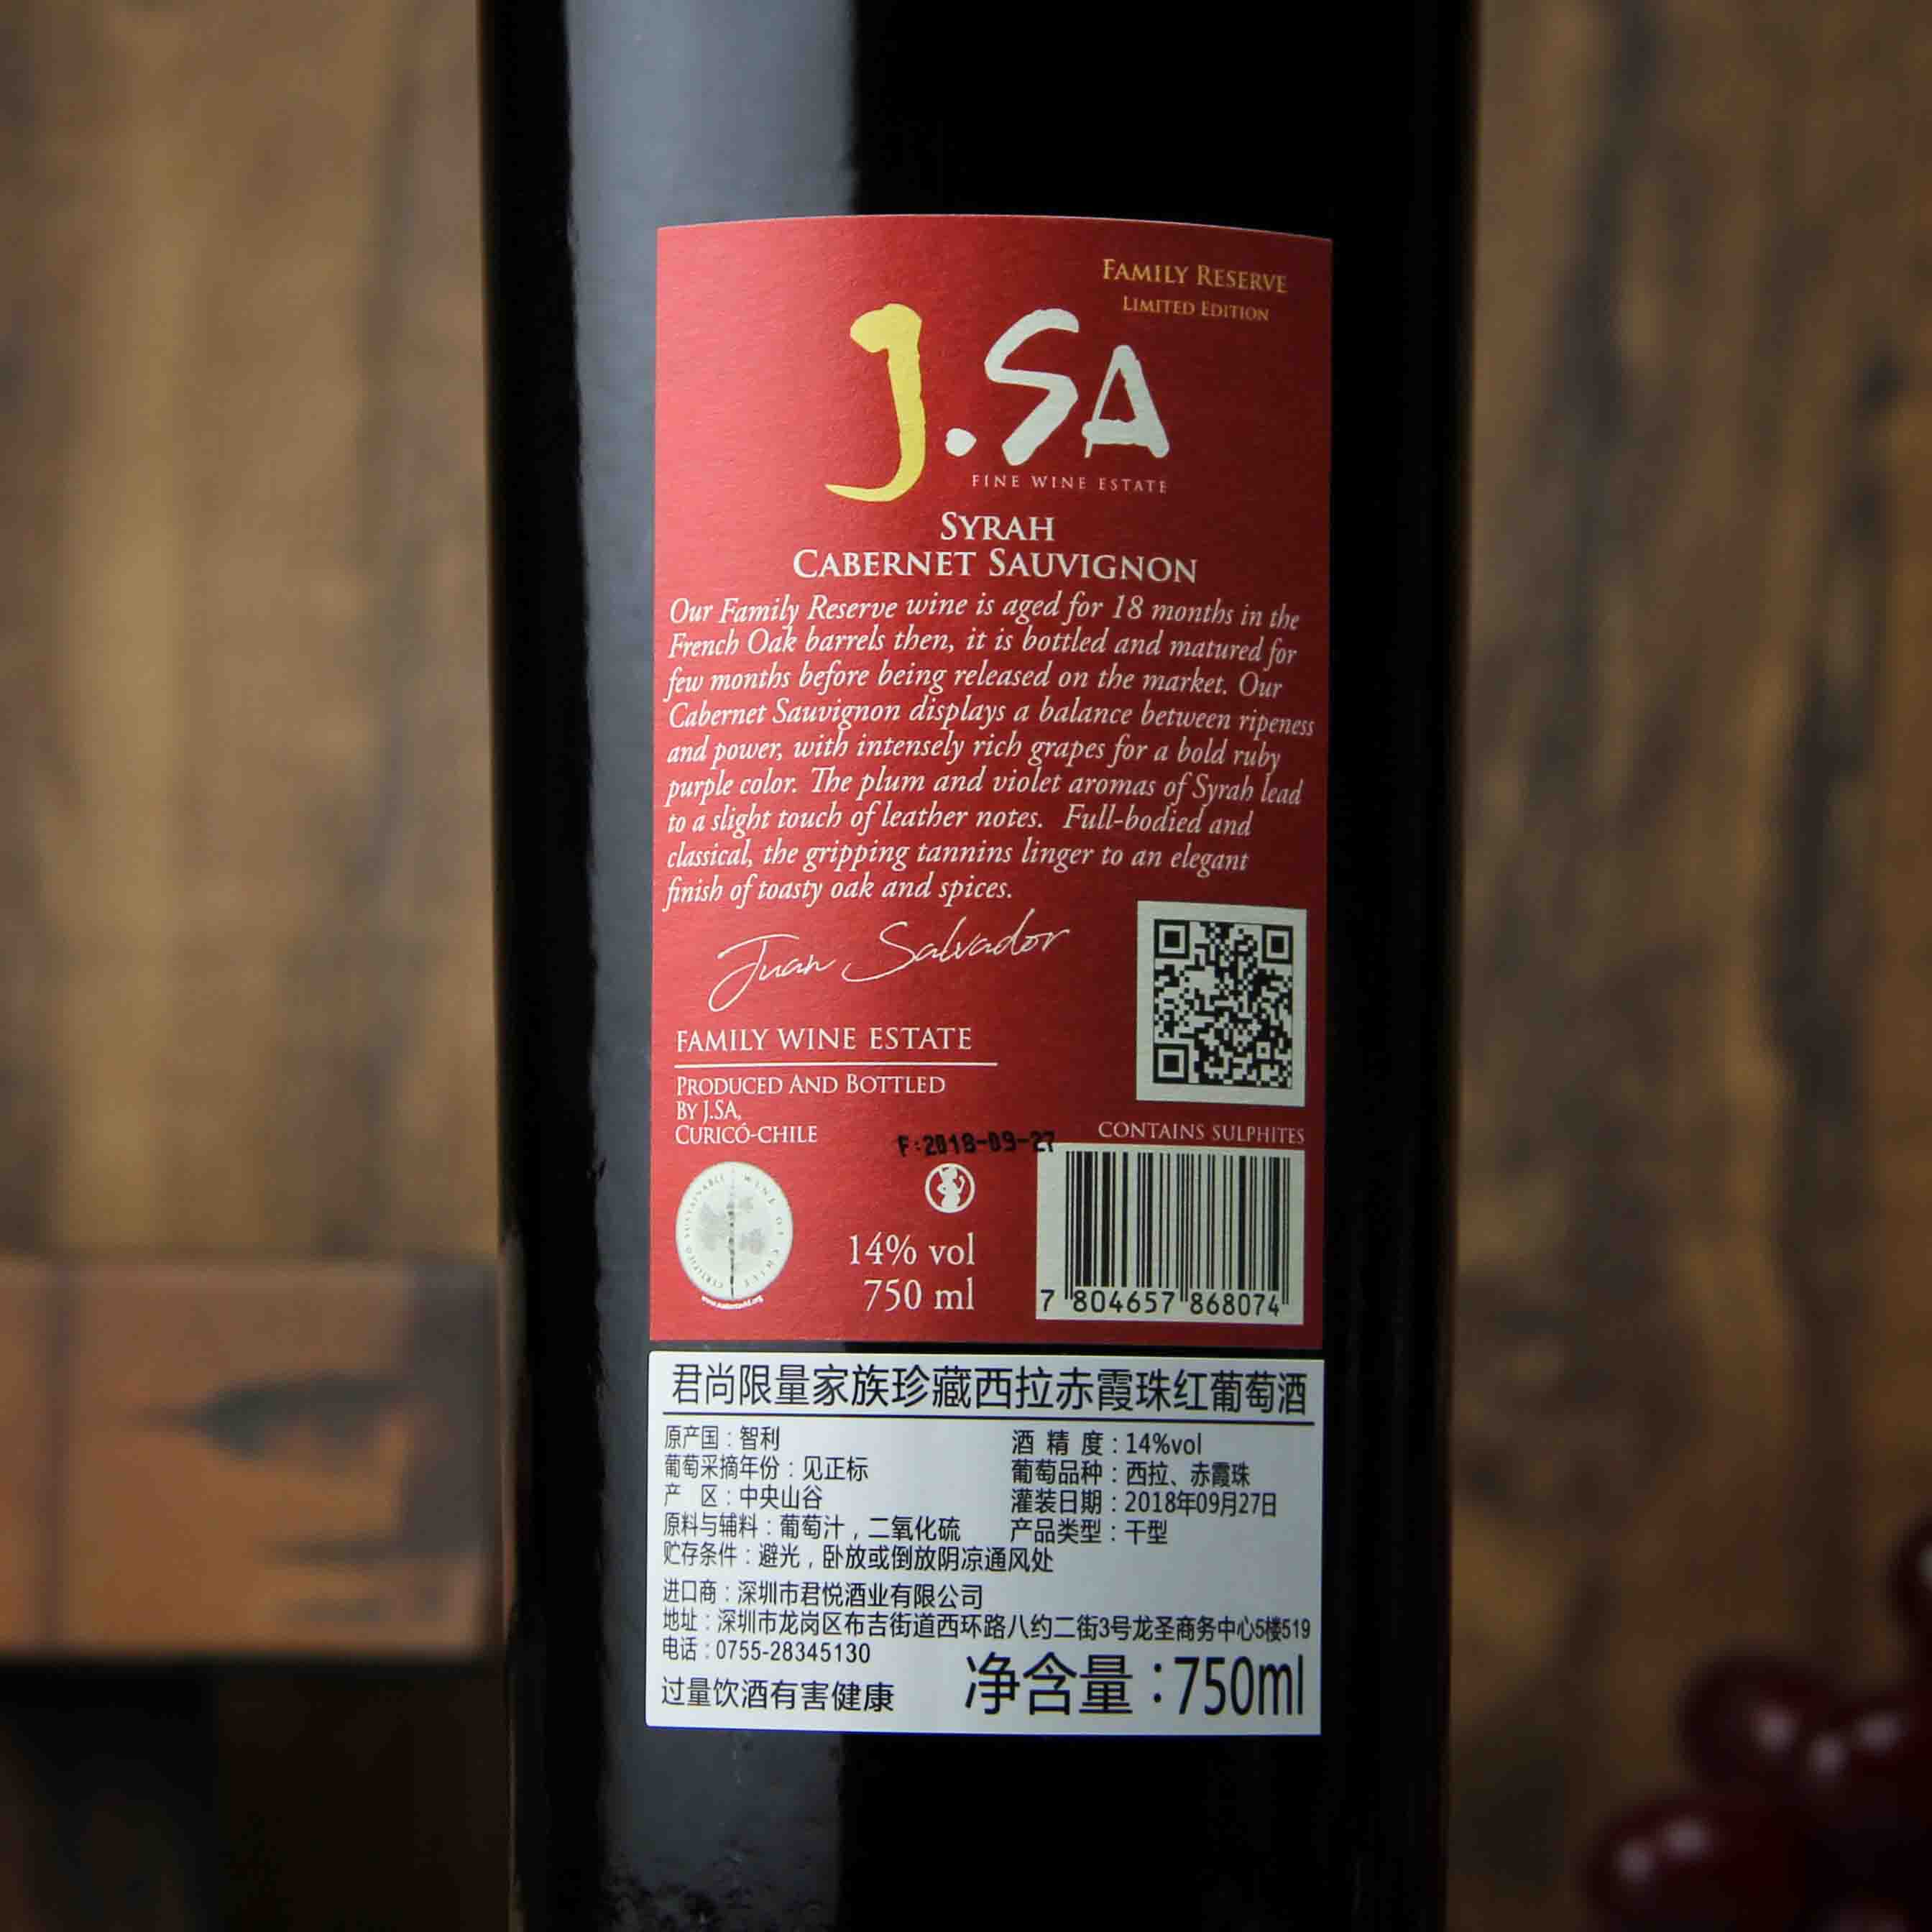 智利库里科谷君尚限量家族珍藏红葡萄酒